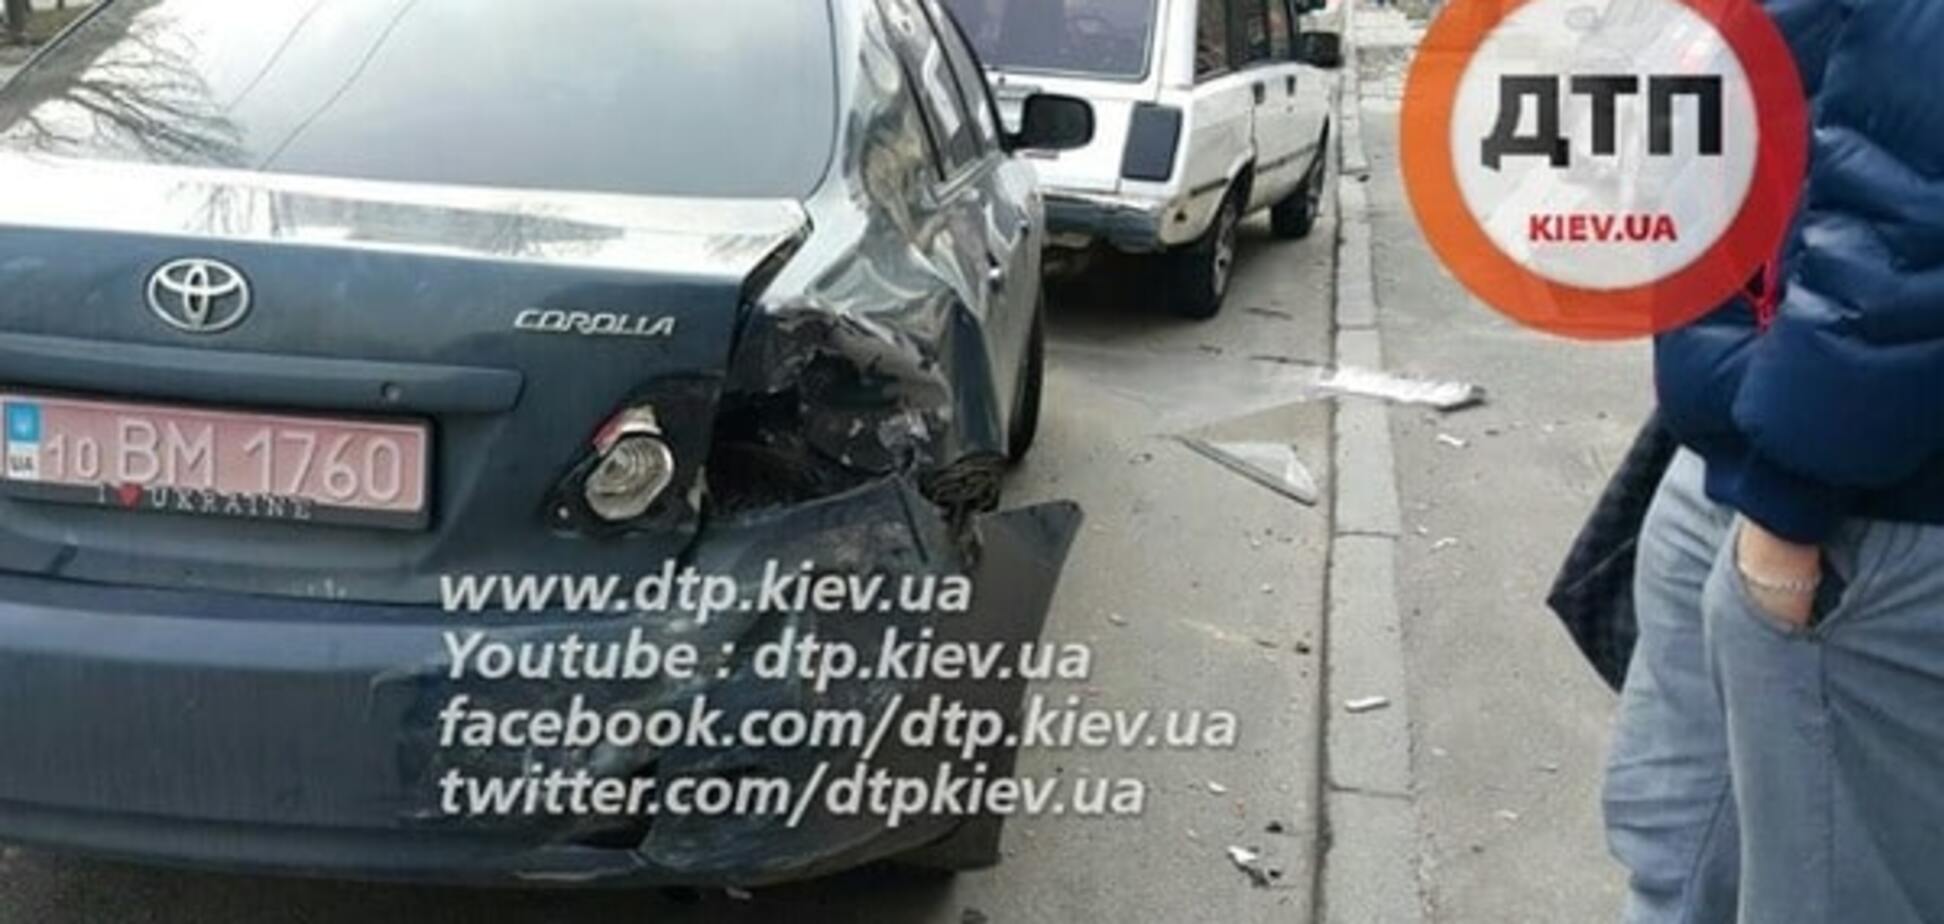 В Киеве пьяный водитель на BMW сбил дерево и 'помял' 4 машины